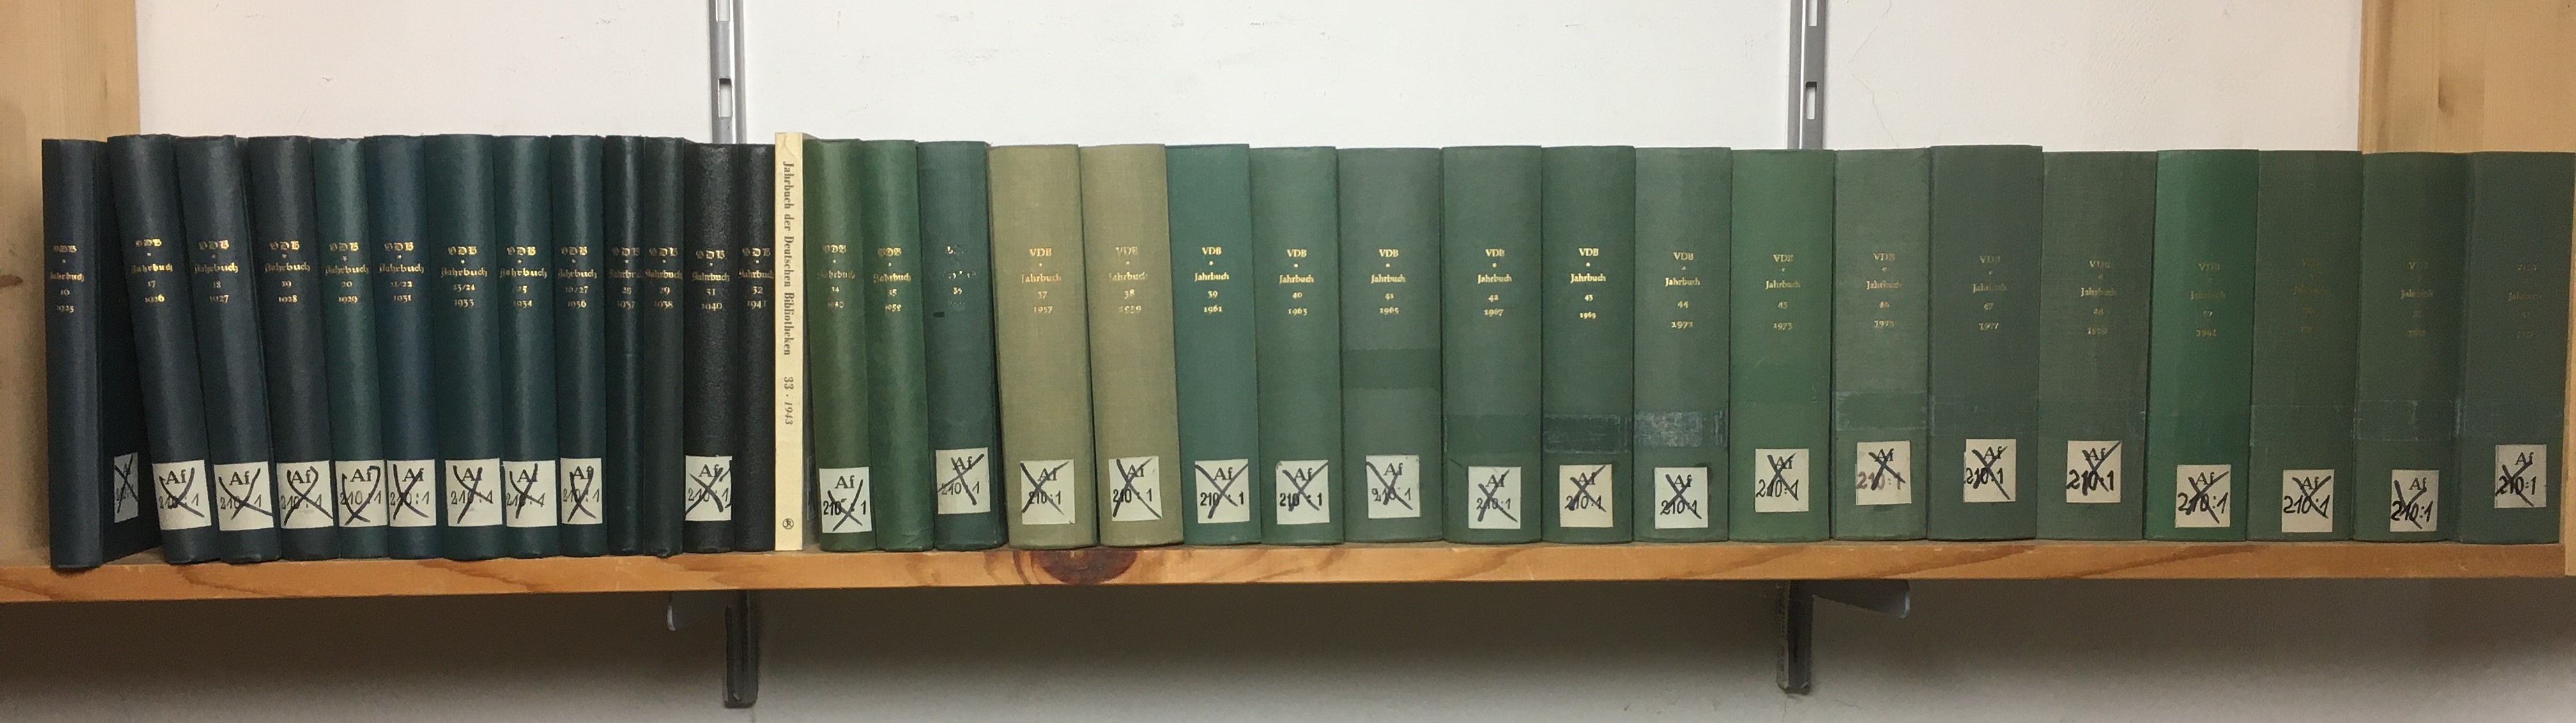   Jahrbuch der Deutschen Bibliotheken. Bände 16-52 (in 33 Büchern gebunden) Herausgegeben vom Verein Deutscher Bibliothekare. 